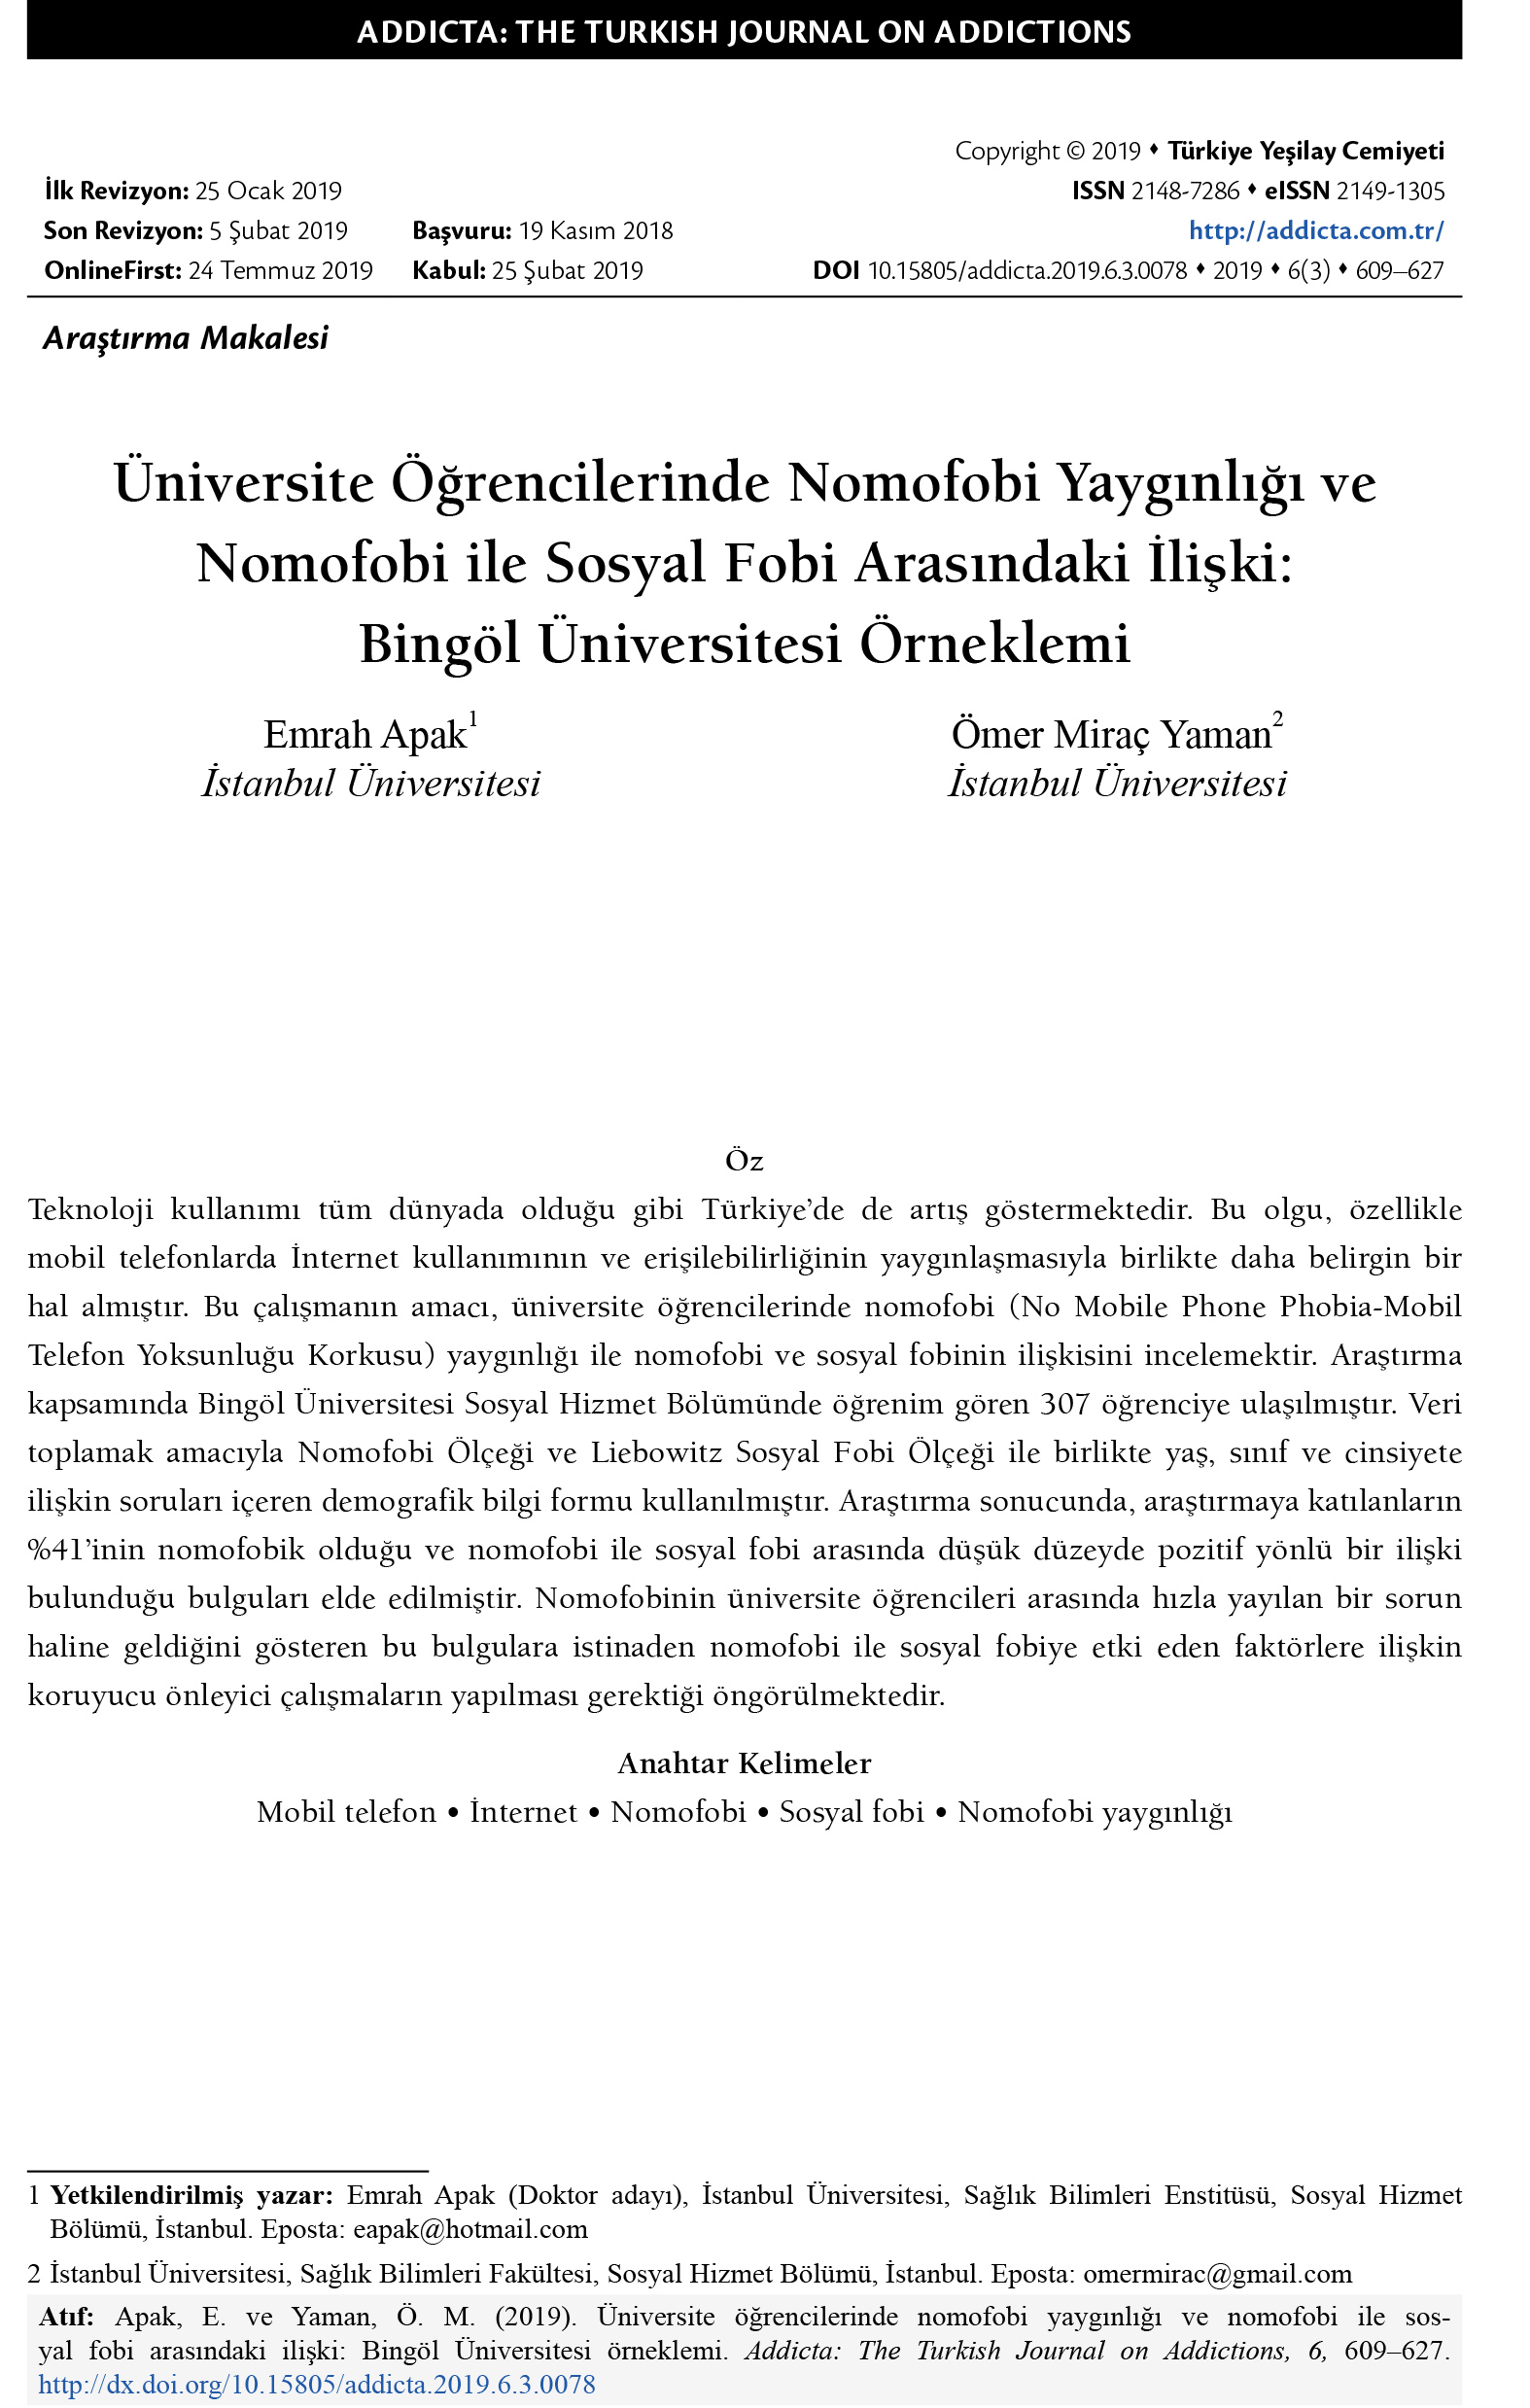 Üniversite Öğrencilerinde Nomofobi Yaygınlığı ve Nomofobi ile Sosyal Fobi Arasındaki İlişki: Bingöl Üniversitesi Örneklemi